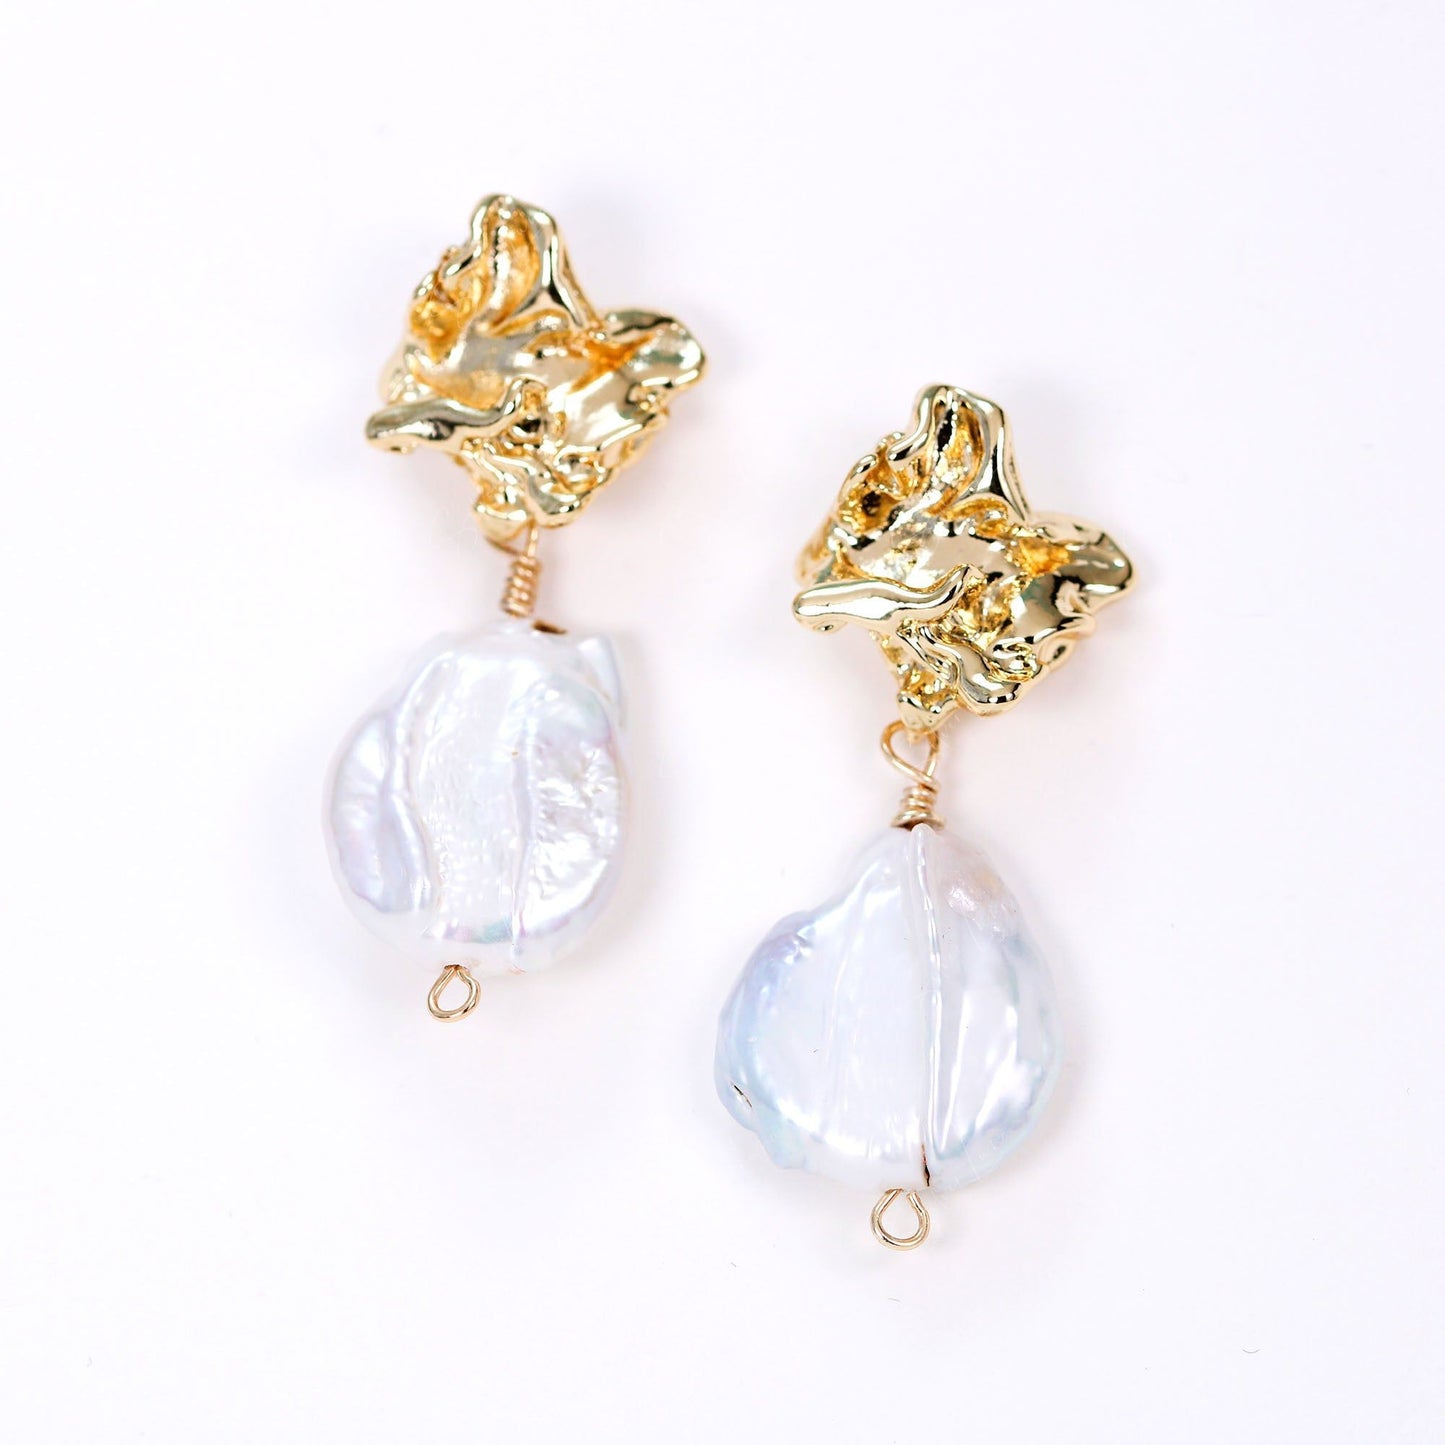 Natural freshwater irregular pearl drop earrings